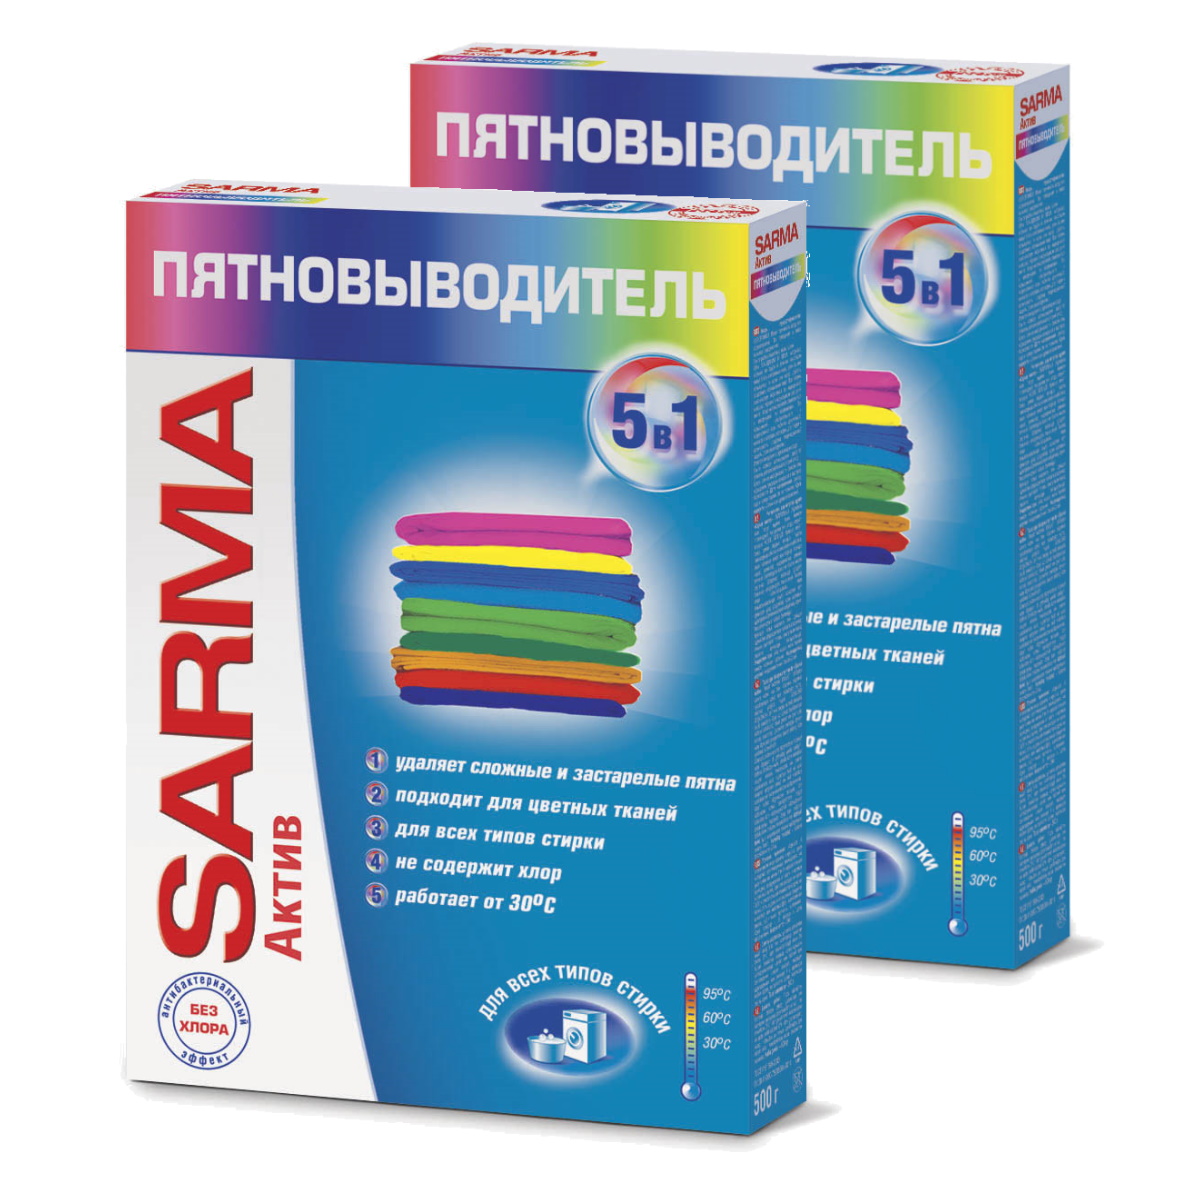 Пятновыводитель Sarma Актив с антибактериальным эффектом, 500гр (Набор из 2 штук)